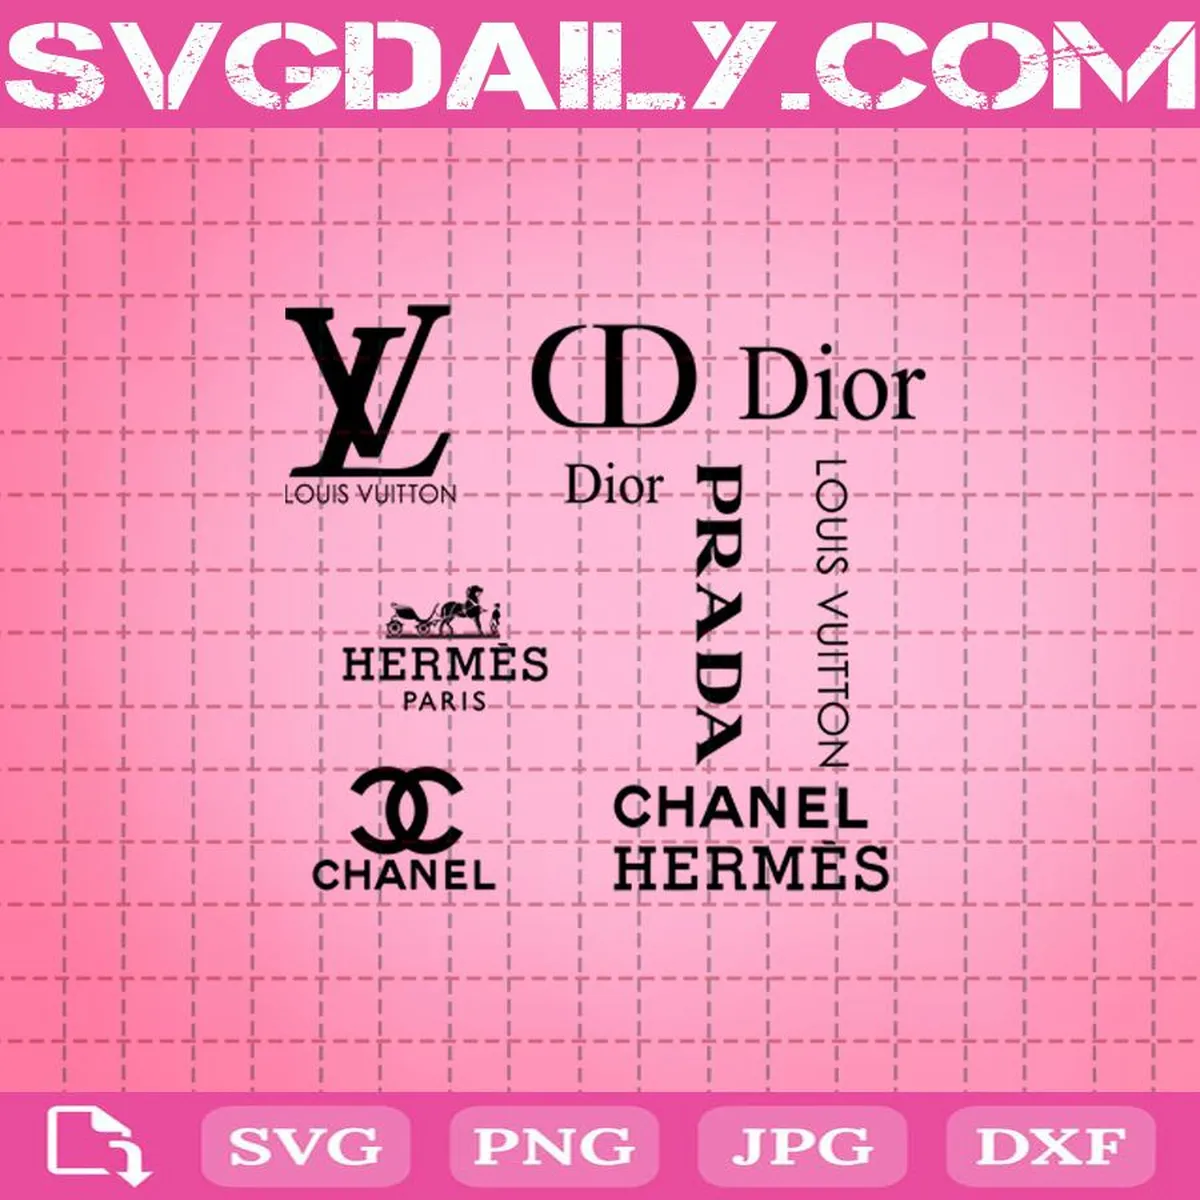 Bundle Brand Logo Fashion Svg, Hermes Svg, Dior Svg, Chanel Svg, Prada Svg, Brand Logo Fashion Svg, Fashion Logo Svg